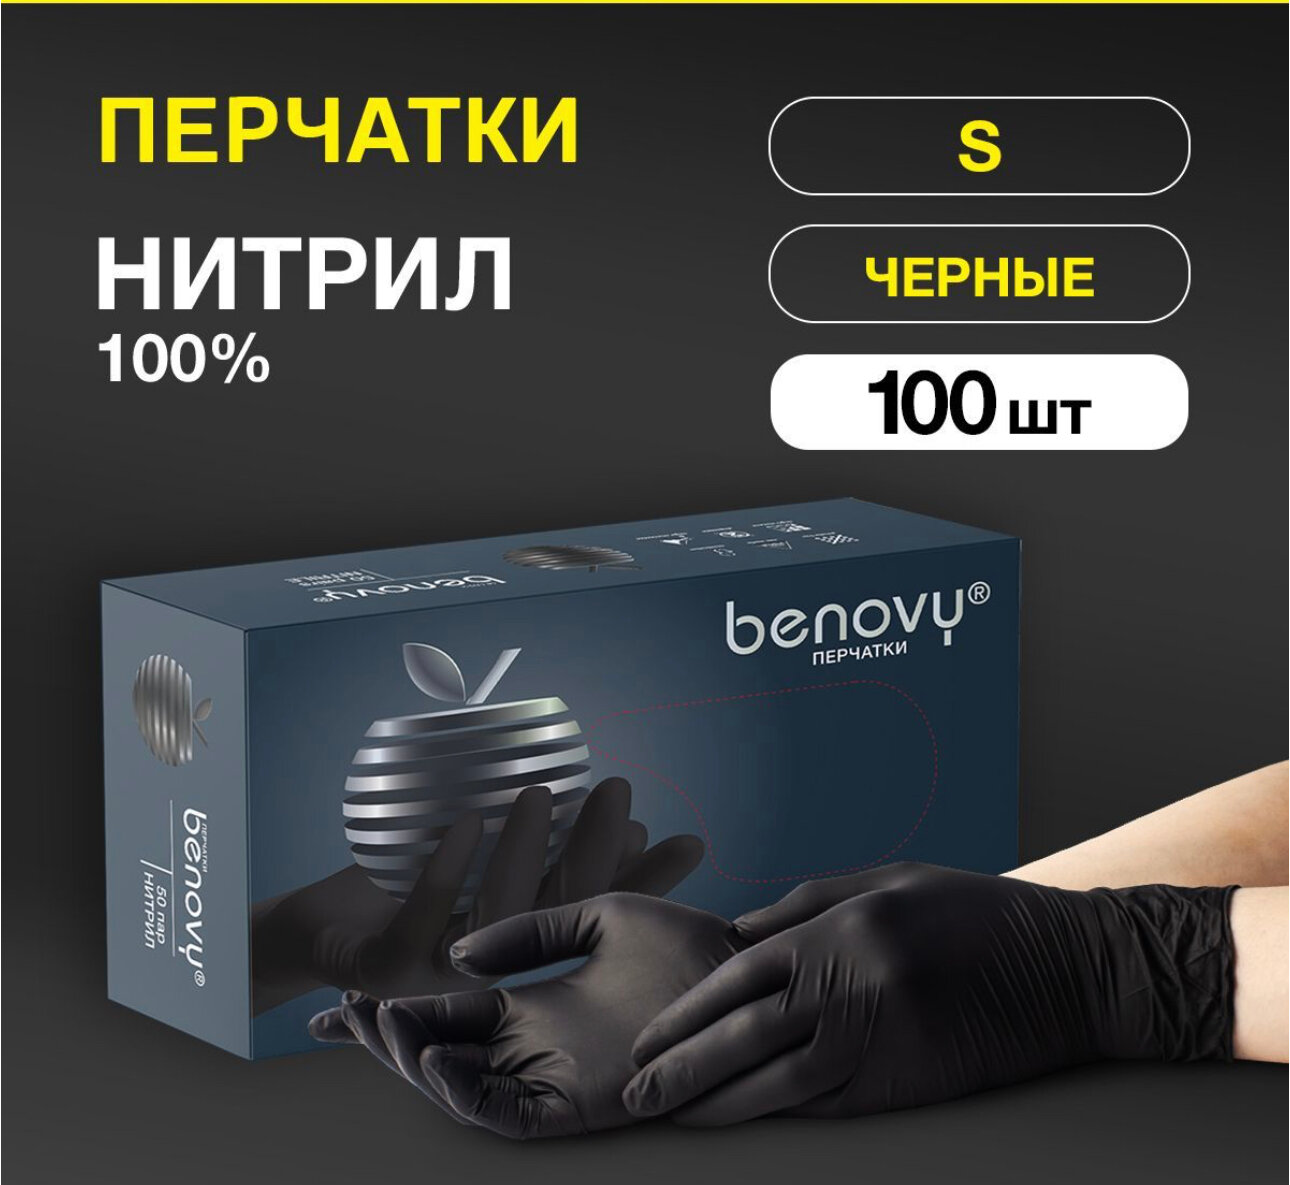 Перчатки смотровые Benovy Nitrile Multicolor текстурированные на пальцах, 300 шт (150 пар), размер: S, цвет: черный, 3 уп. по 50 пар